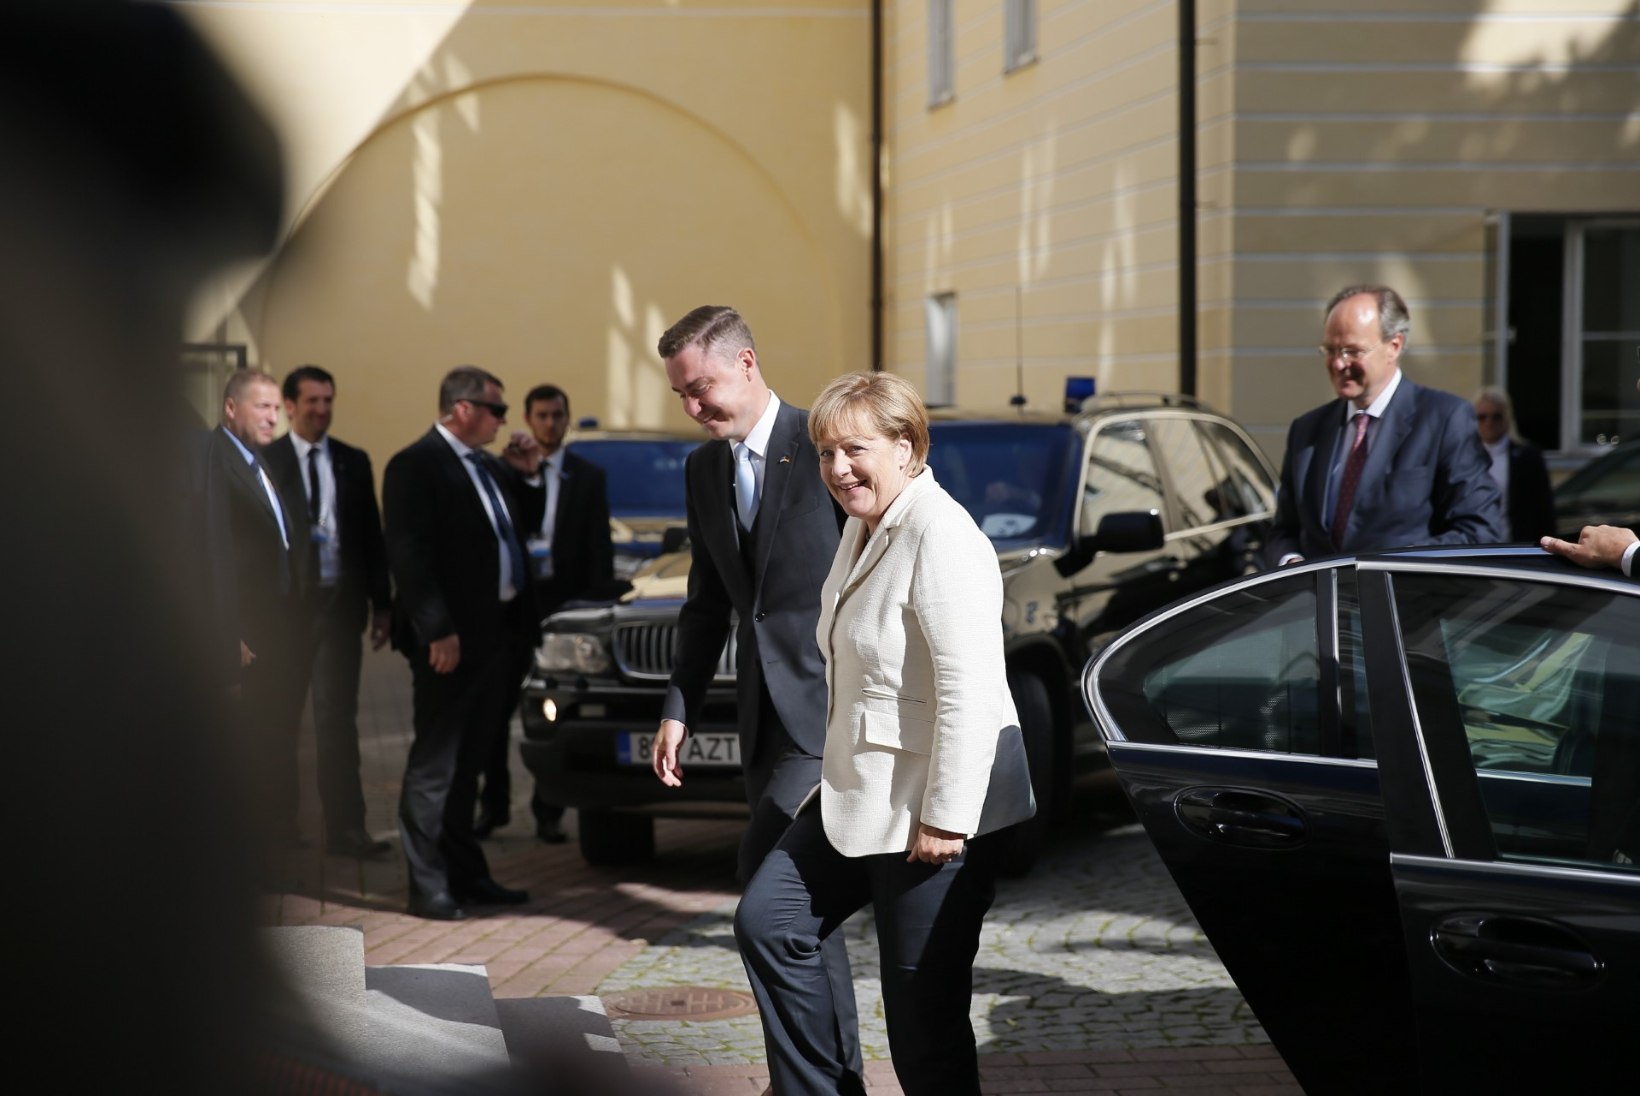 FOTOD | Angela Merkel jõudis Toompeale